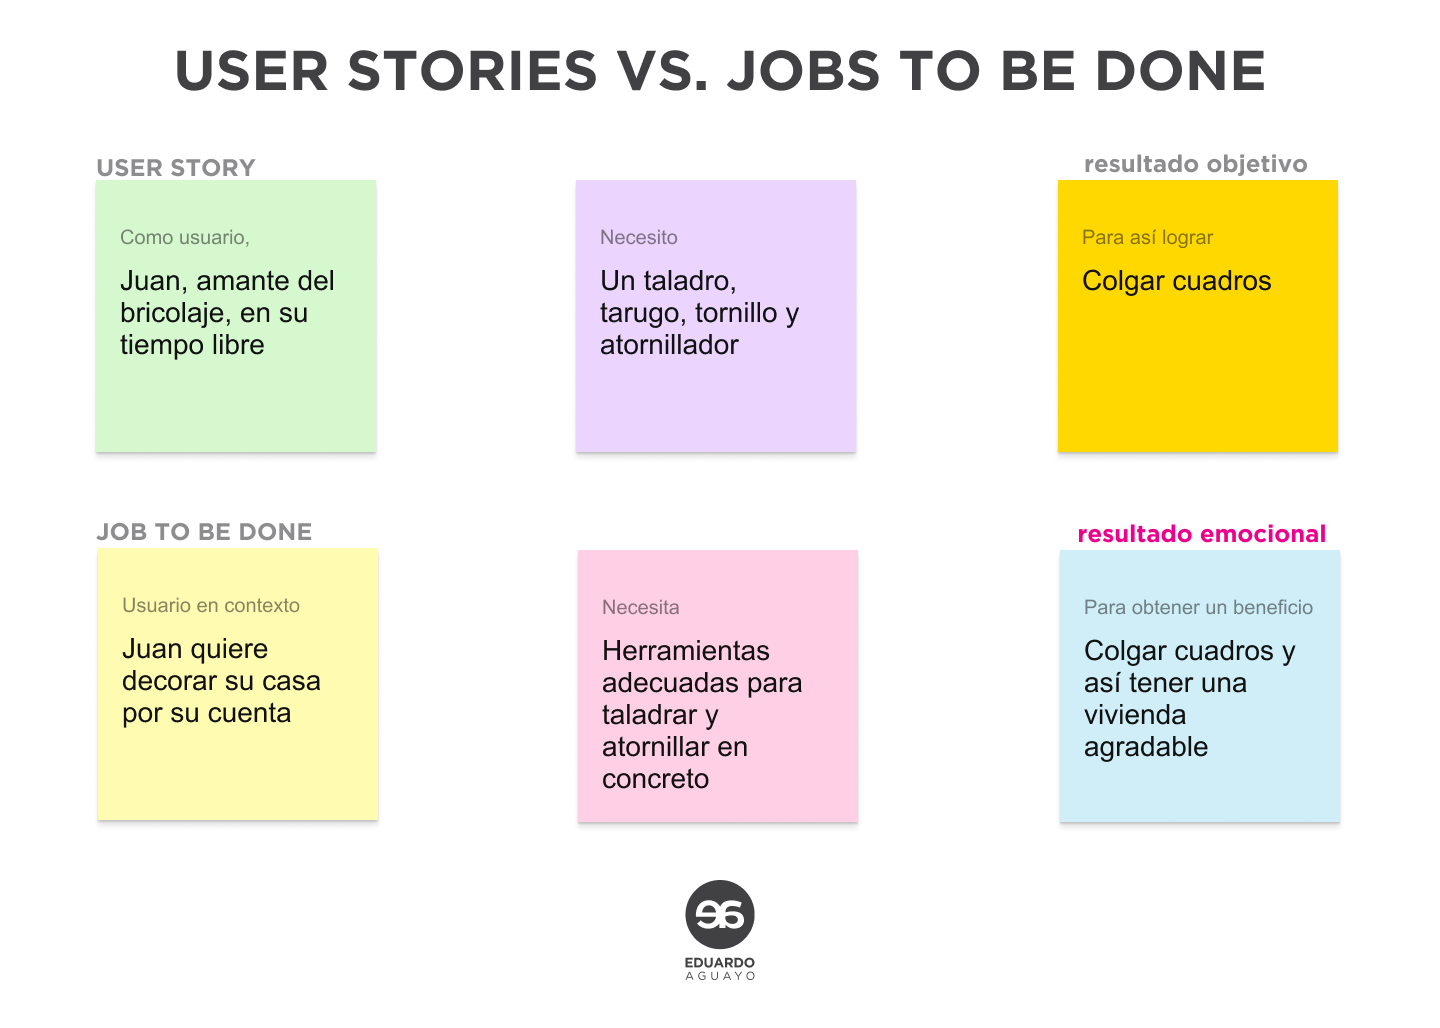 Esquema demostrando las diferencias de un job to be done frente a un user story en diseño UX. investigacion ux, ux research, lean ux research, proceso ux